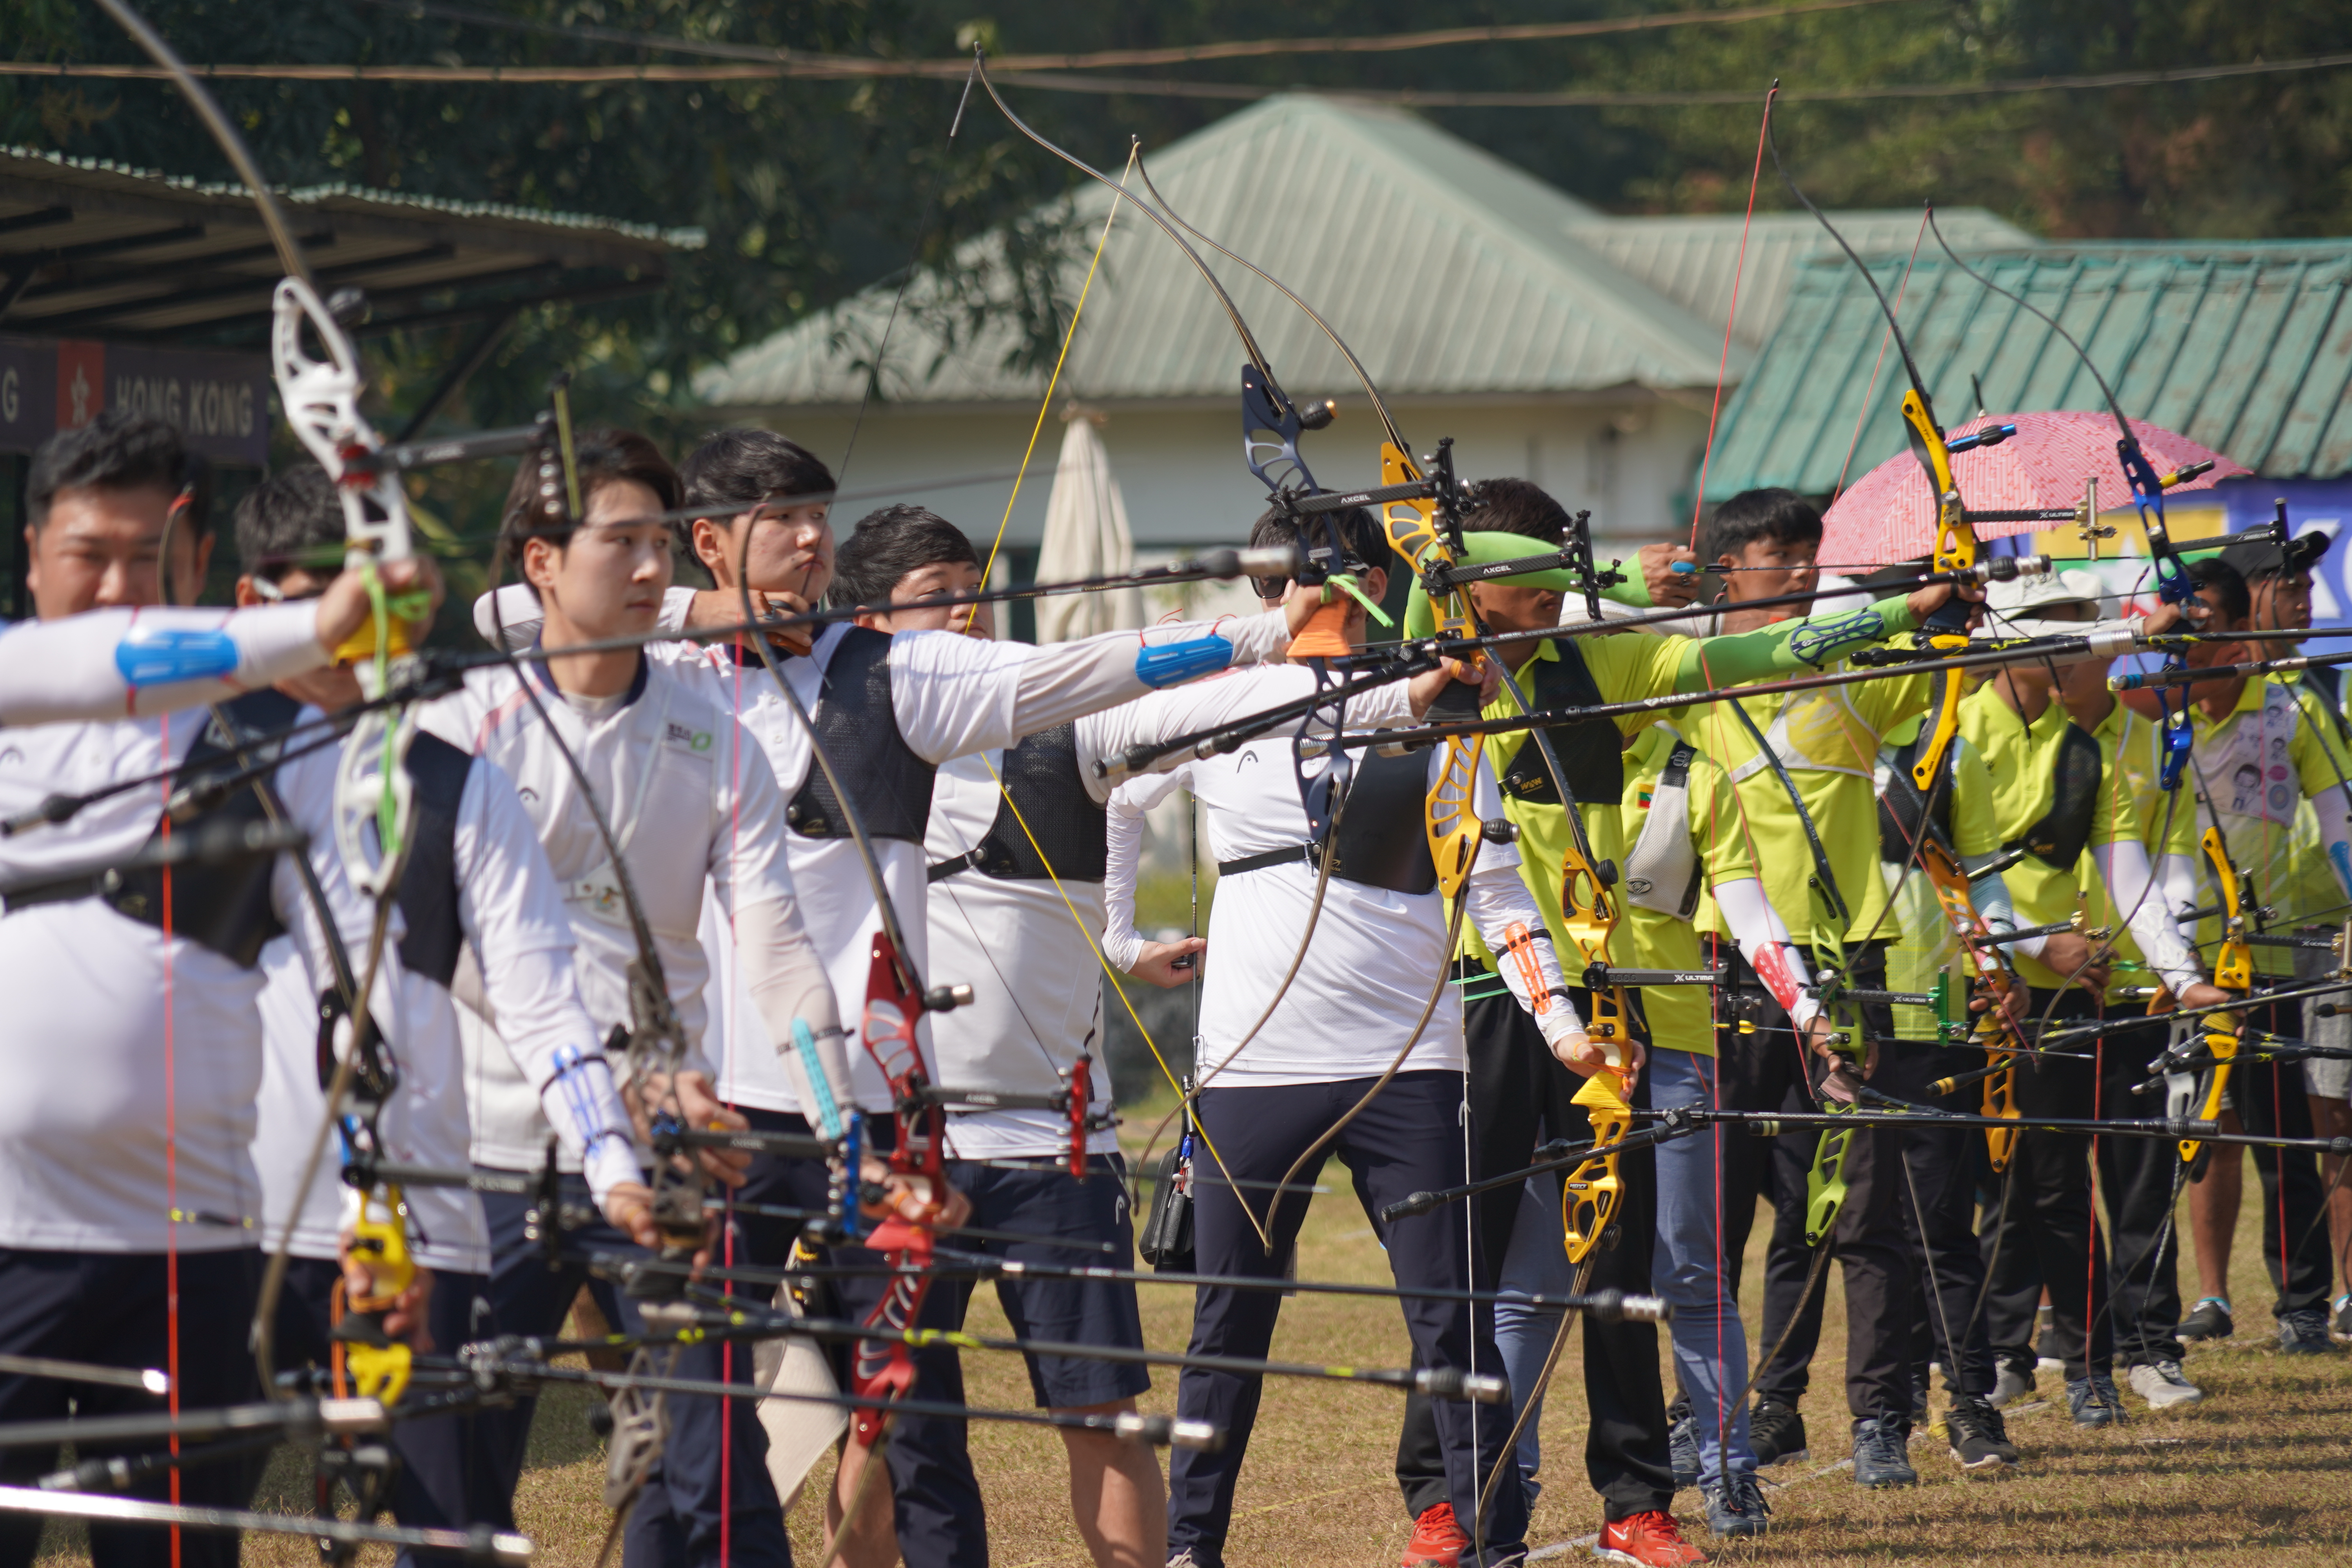 양궁 대표팀이 지난달 고온다습한 8월의 날씨와 비슷한 미얀마 양곤에서 전지훈련을 했을 때의 모습이다. 대한양궁협회 제공